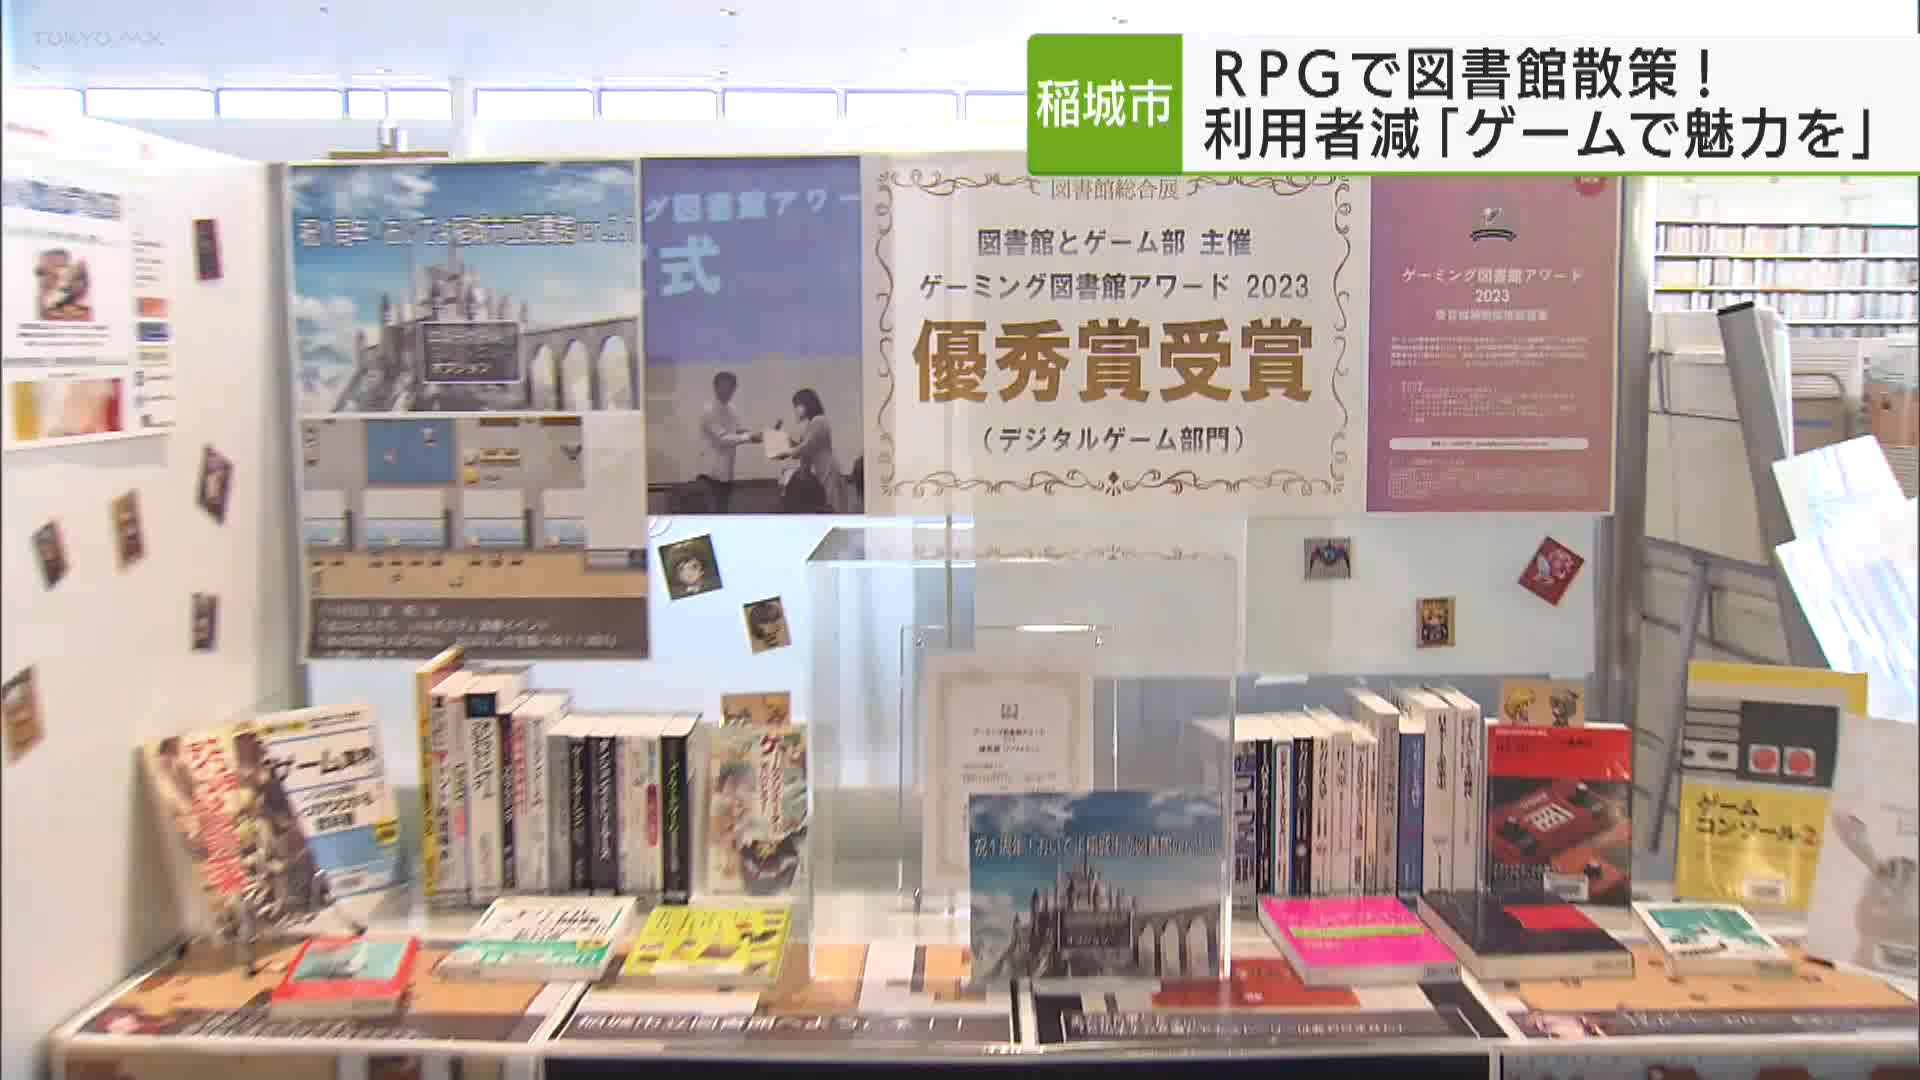 稲城市は、コロナ禍で訪れる人が減った図書館を「ロールプレイングゲーム」で散策してもらう取り組みを進めています。担当者は「ゲームとリアルの両方で図書館を楽しんでほしい」と期待しています。